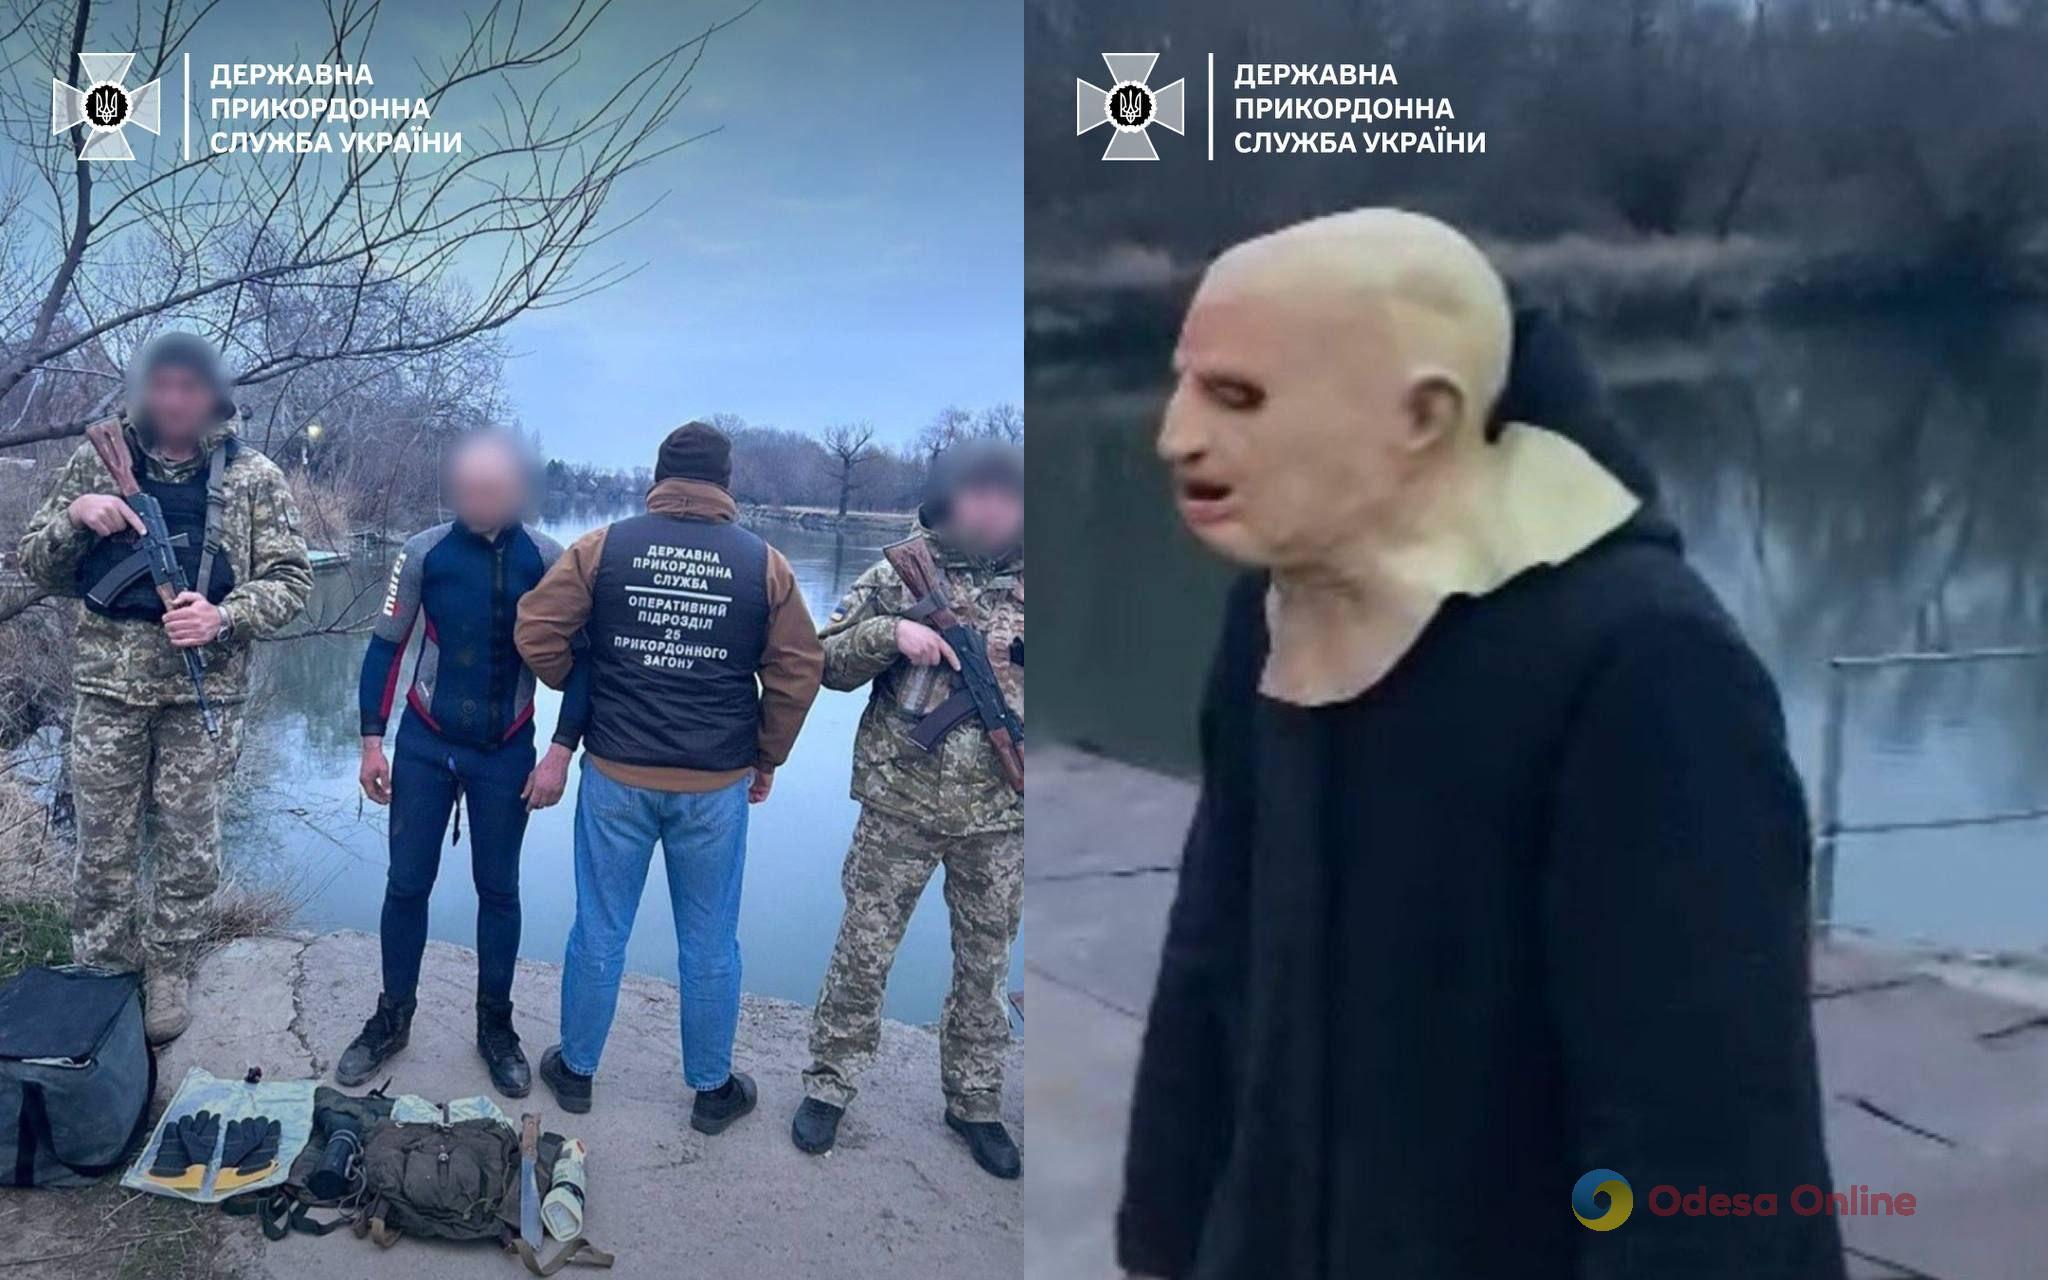 В Одесской области поймали мужчину в маске, плаще и гидрокостюме, который пытался незаконно пересечь границу